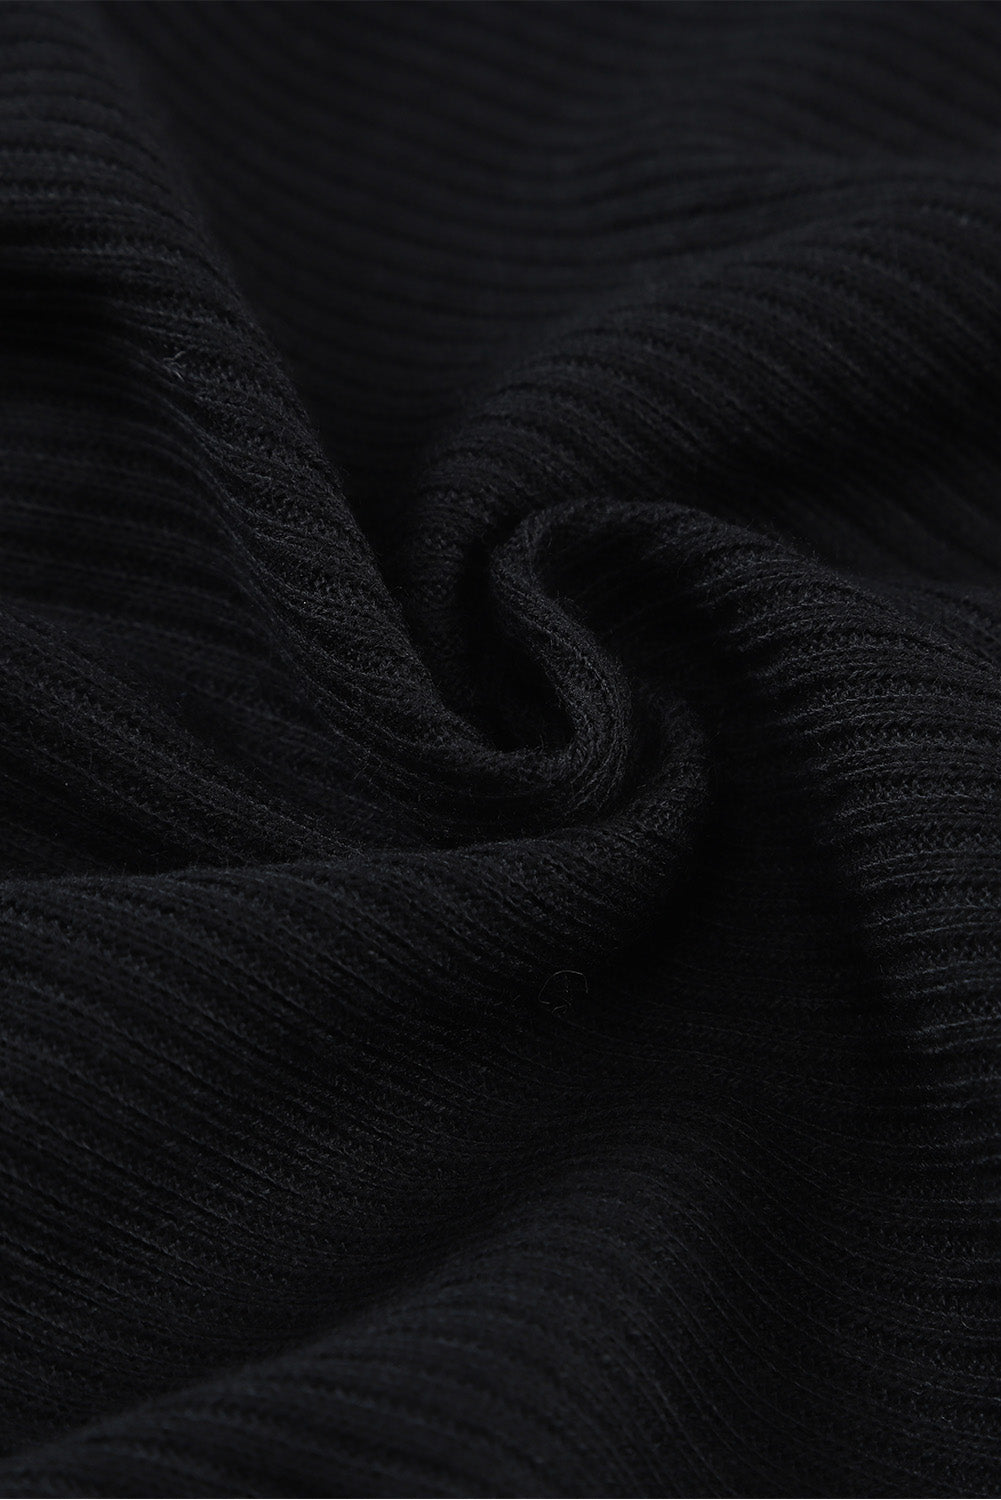 Črna rebrasta pletena midi obleka z razporkom brez rokavov in z gumbi